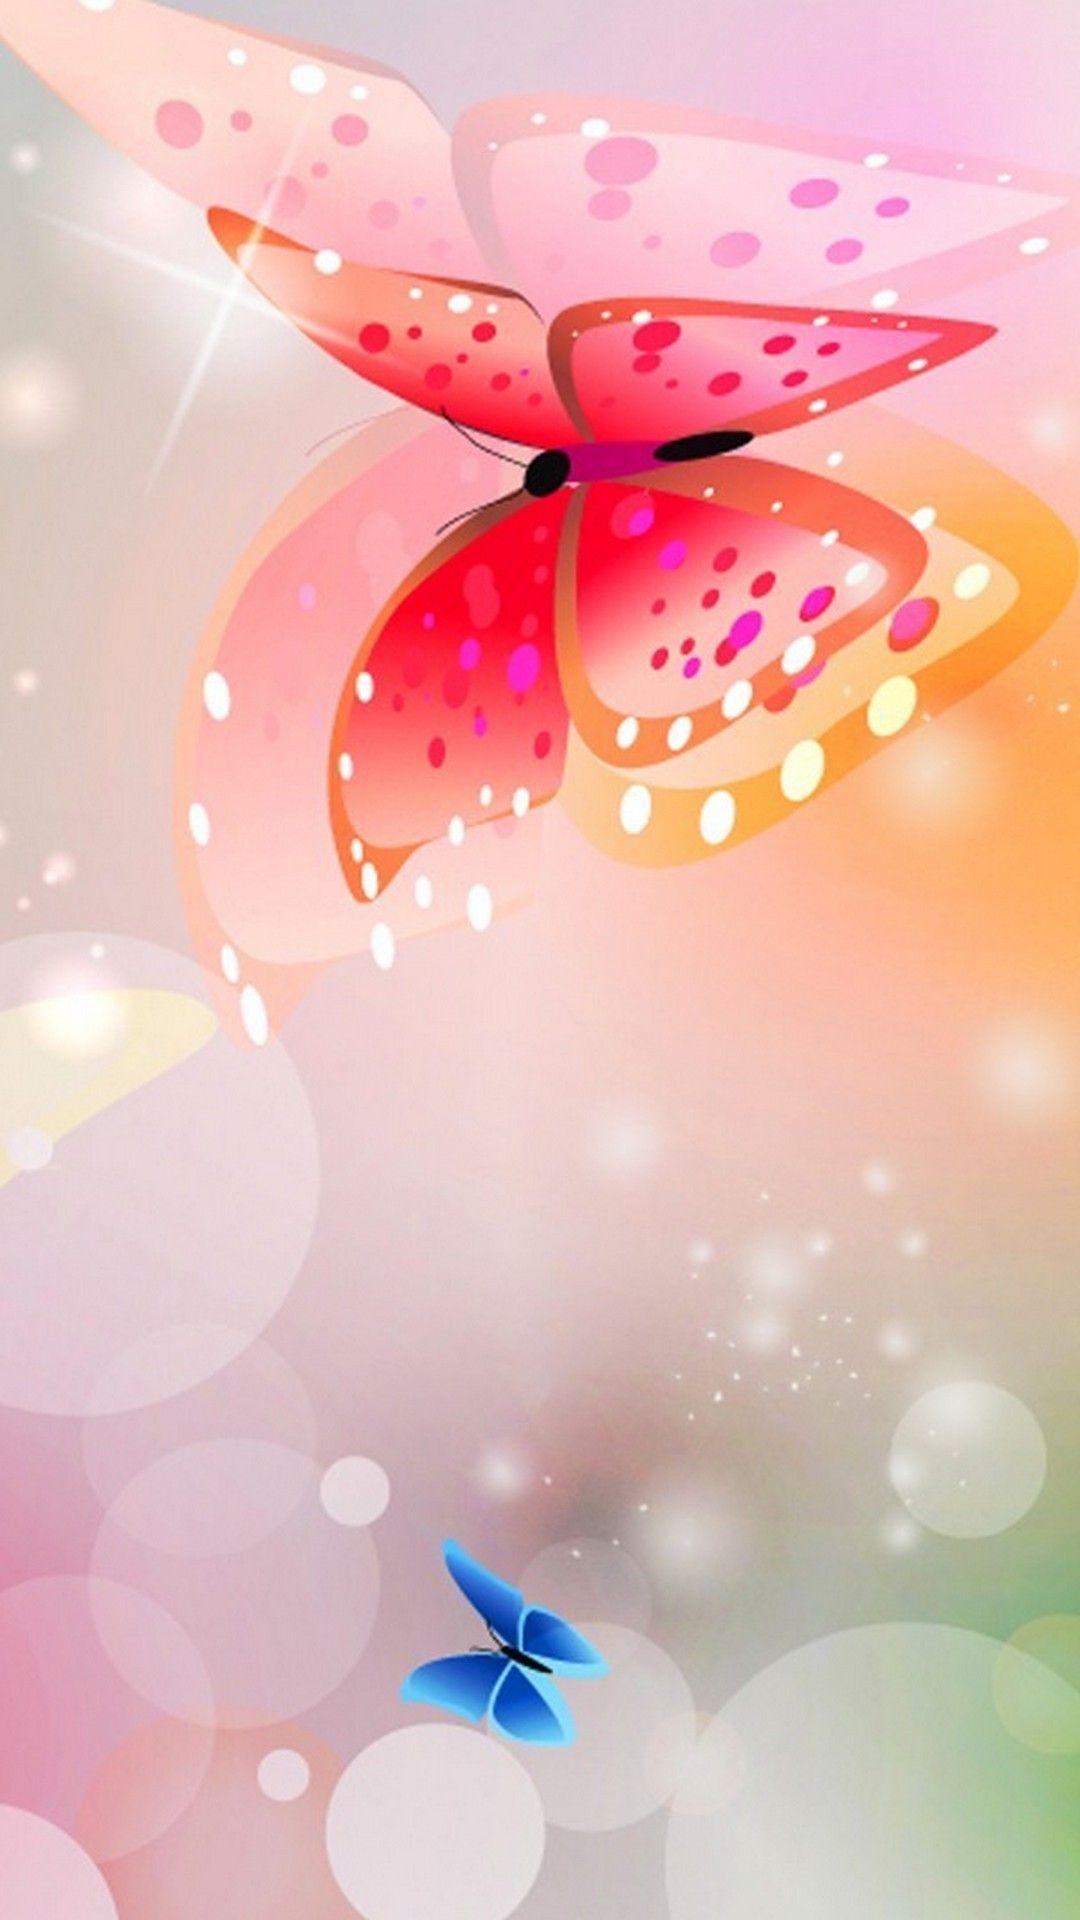 Hình nền con bướm hồng 1080x1920 cho Android - Hình nền Android 2021